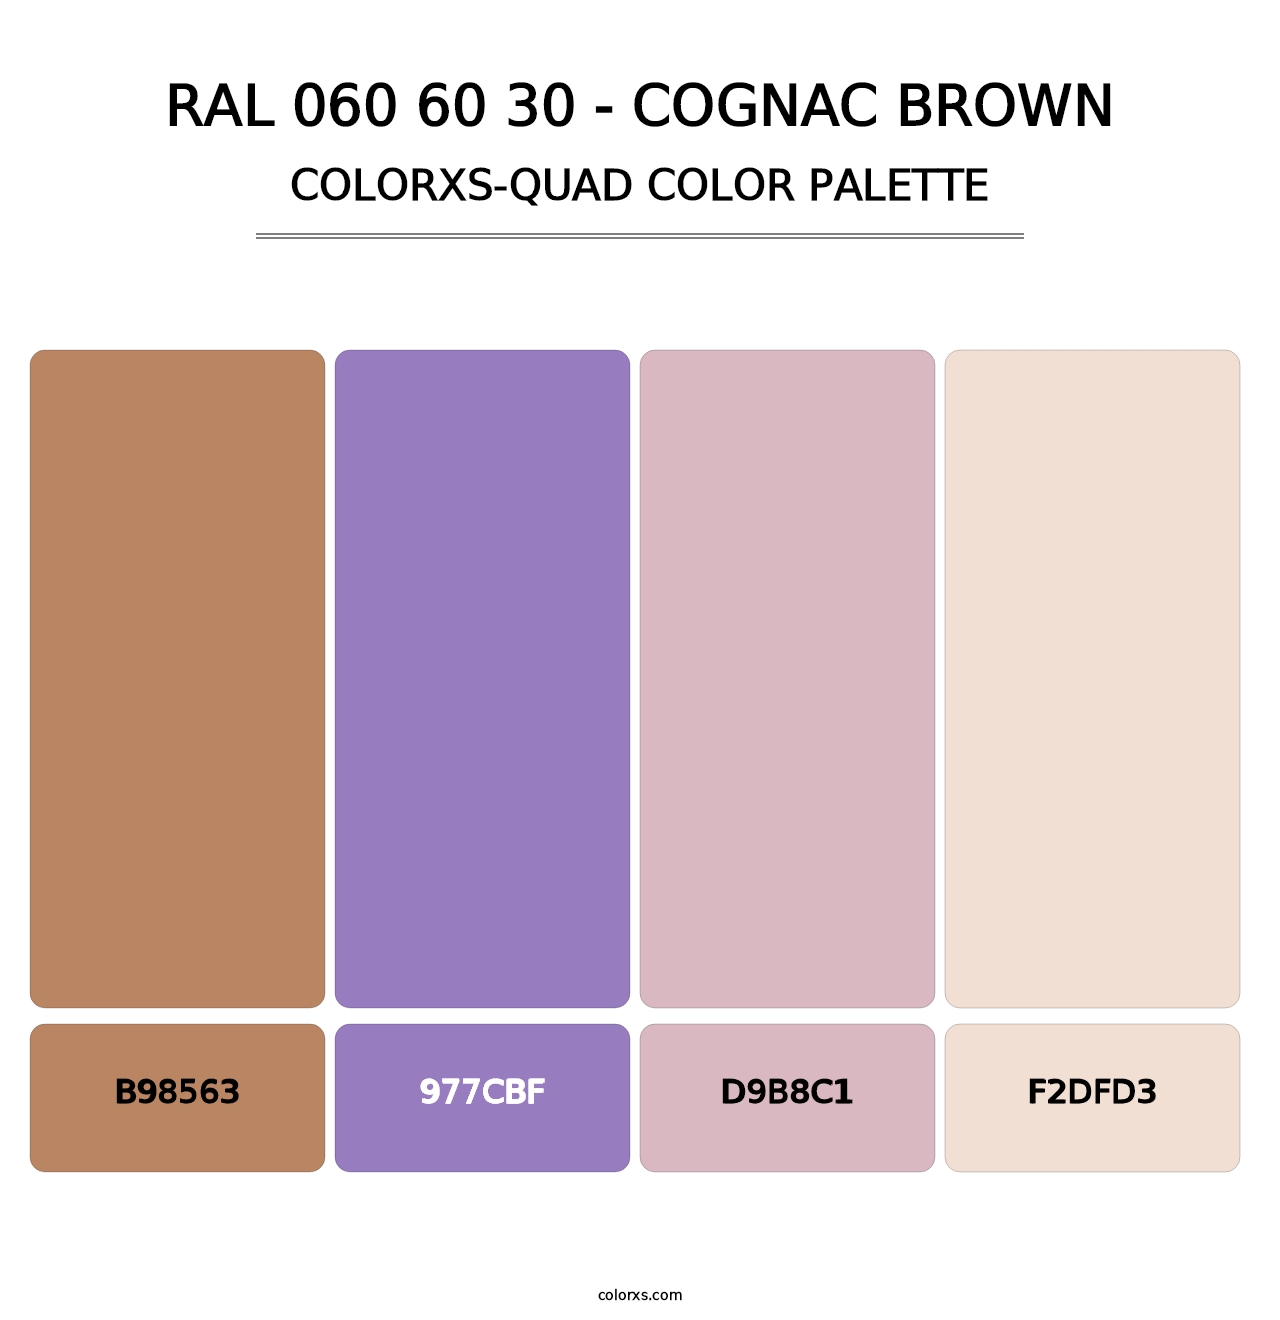 RAL 060 60 30 - Cognac Brown - Colorxs Quad Palette